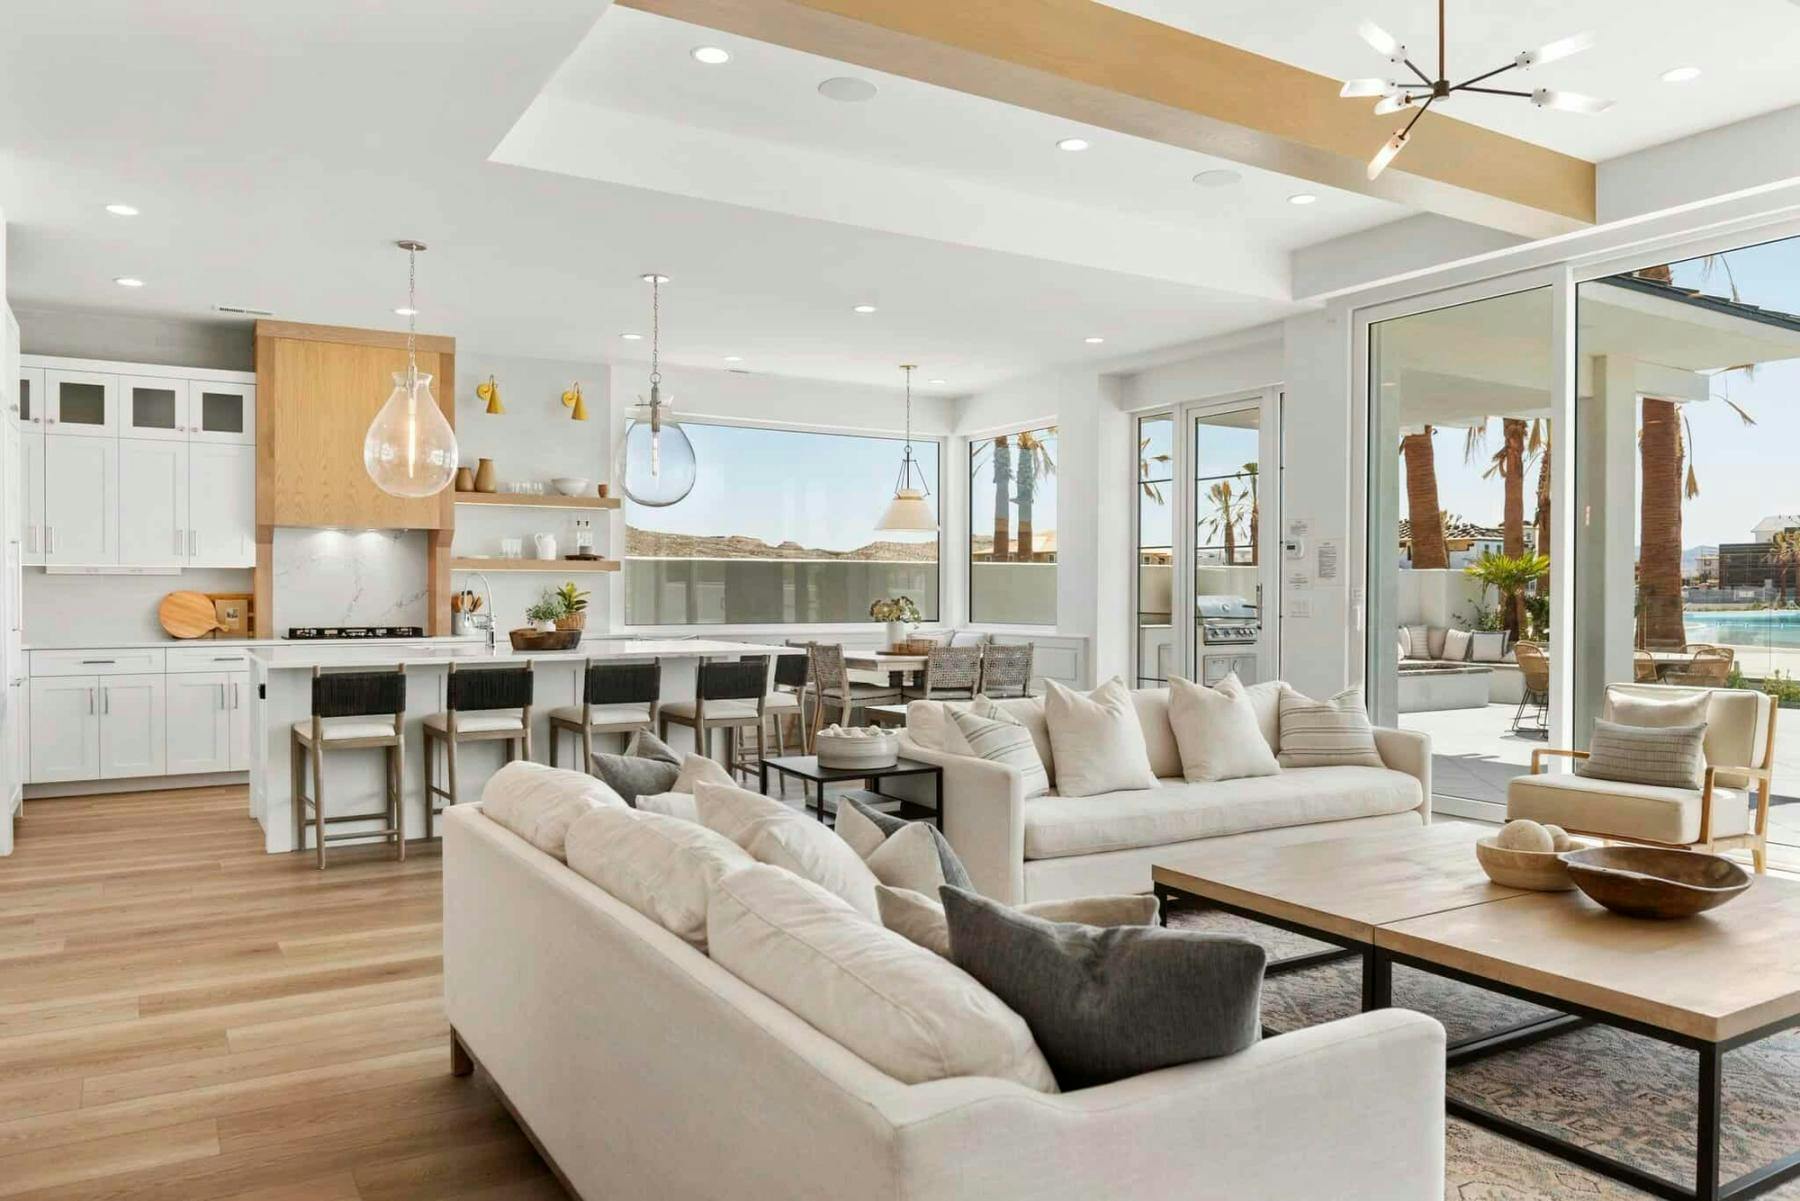 Luxury indoor living space at St. George Utah vacation rental